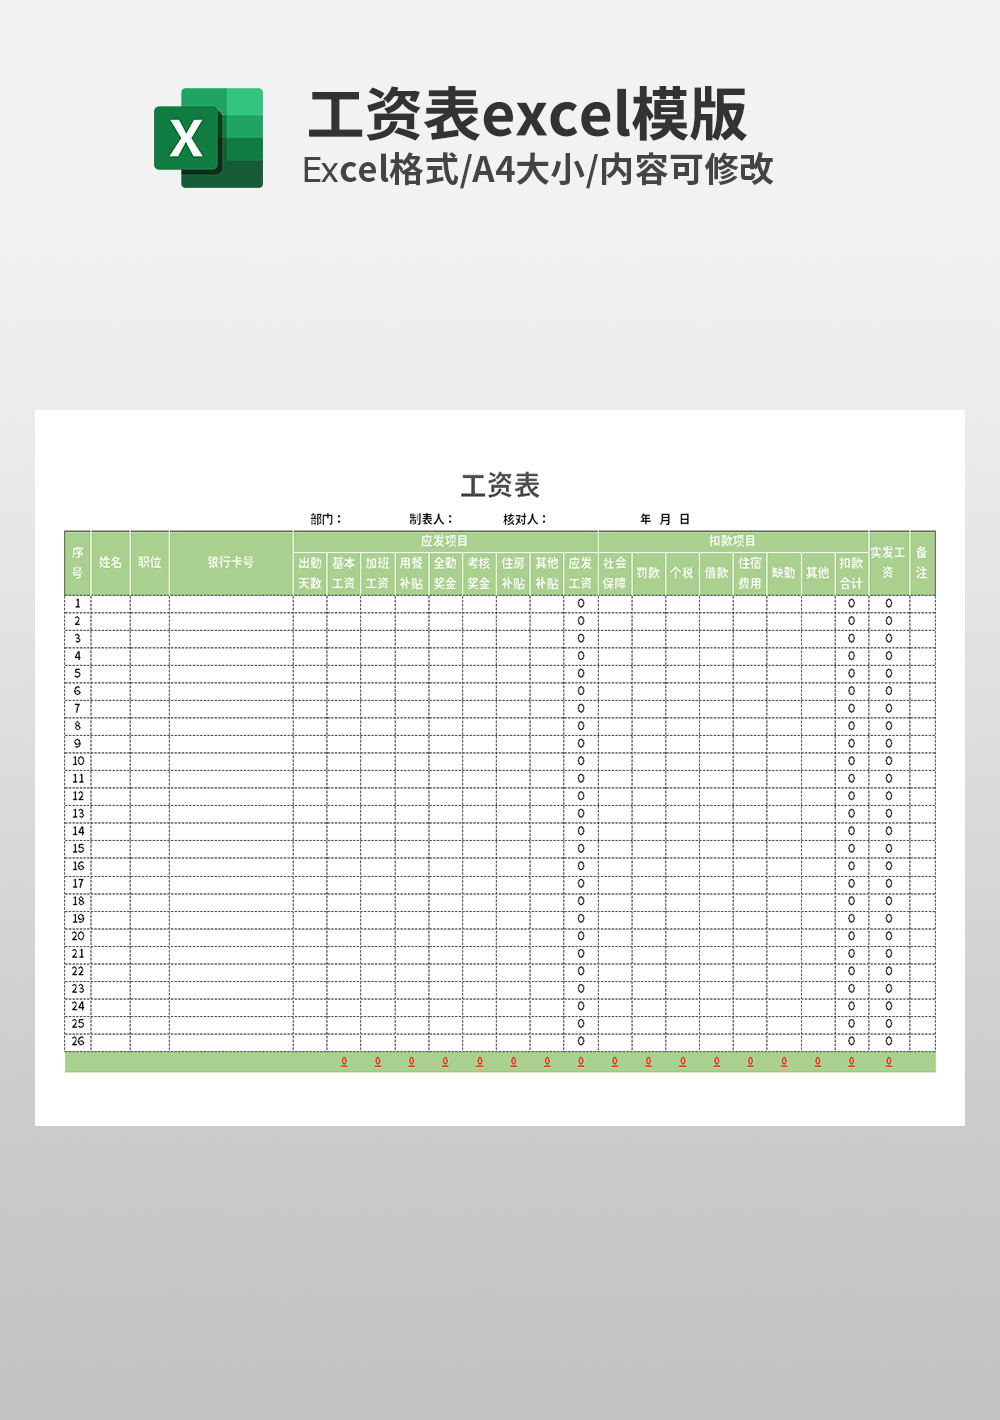 事业单位绩效工资表Excel模板